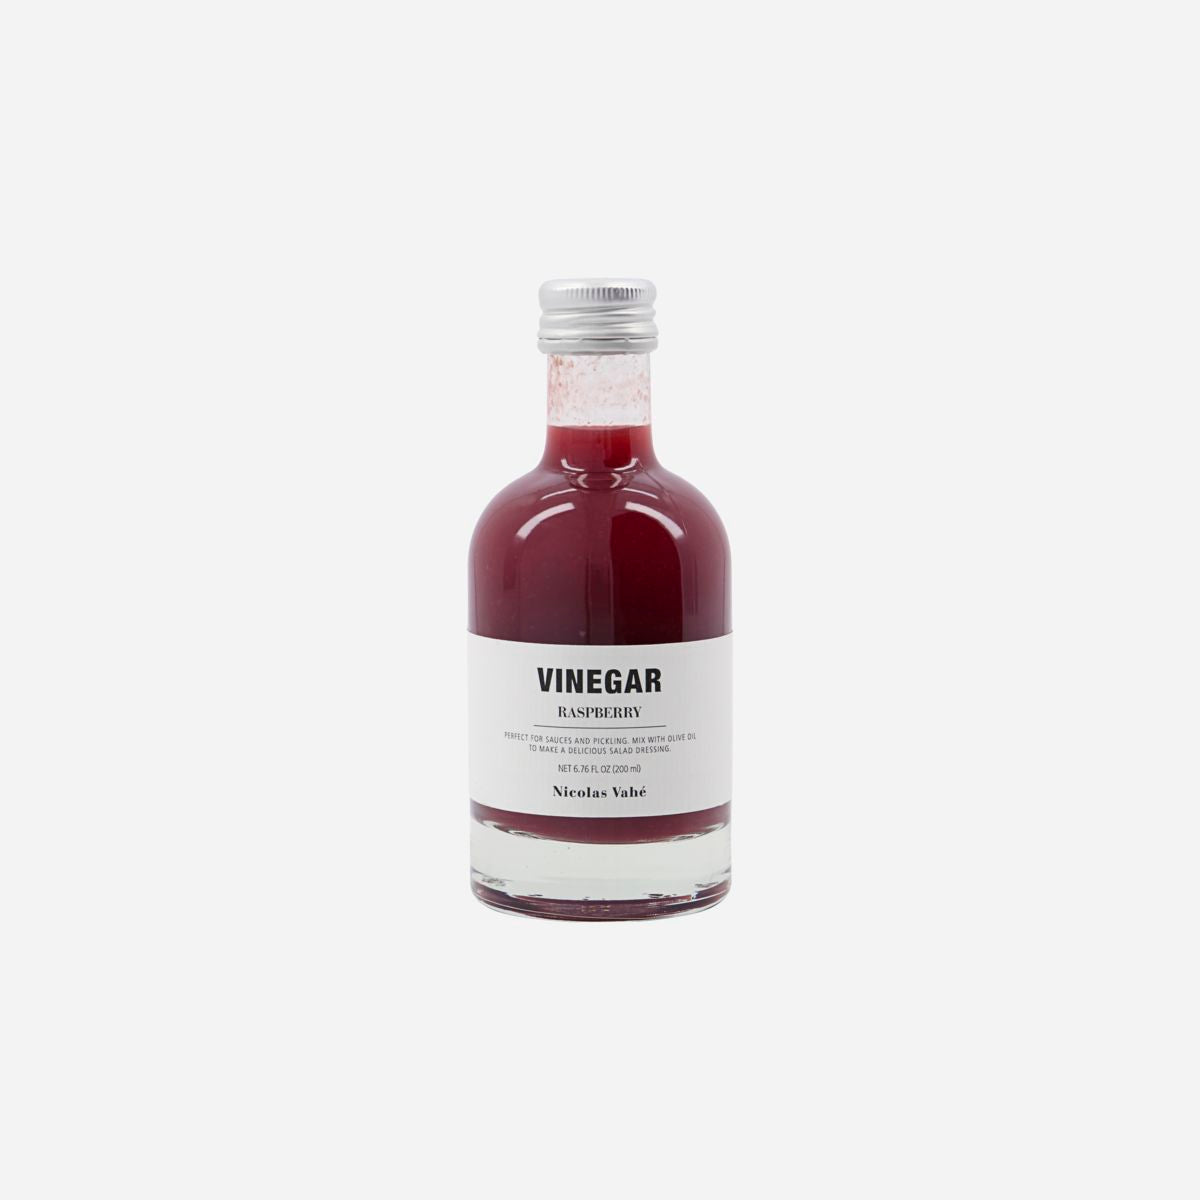 Vinegar raspberry Nicolas Vahe